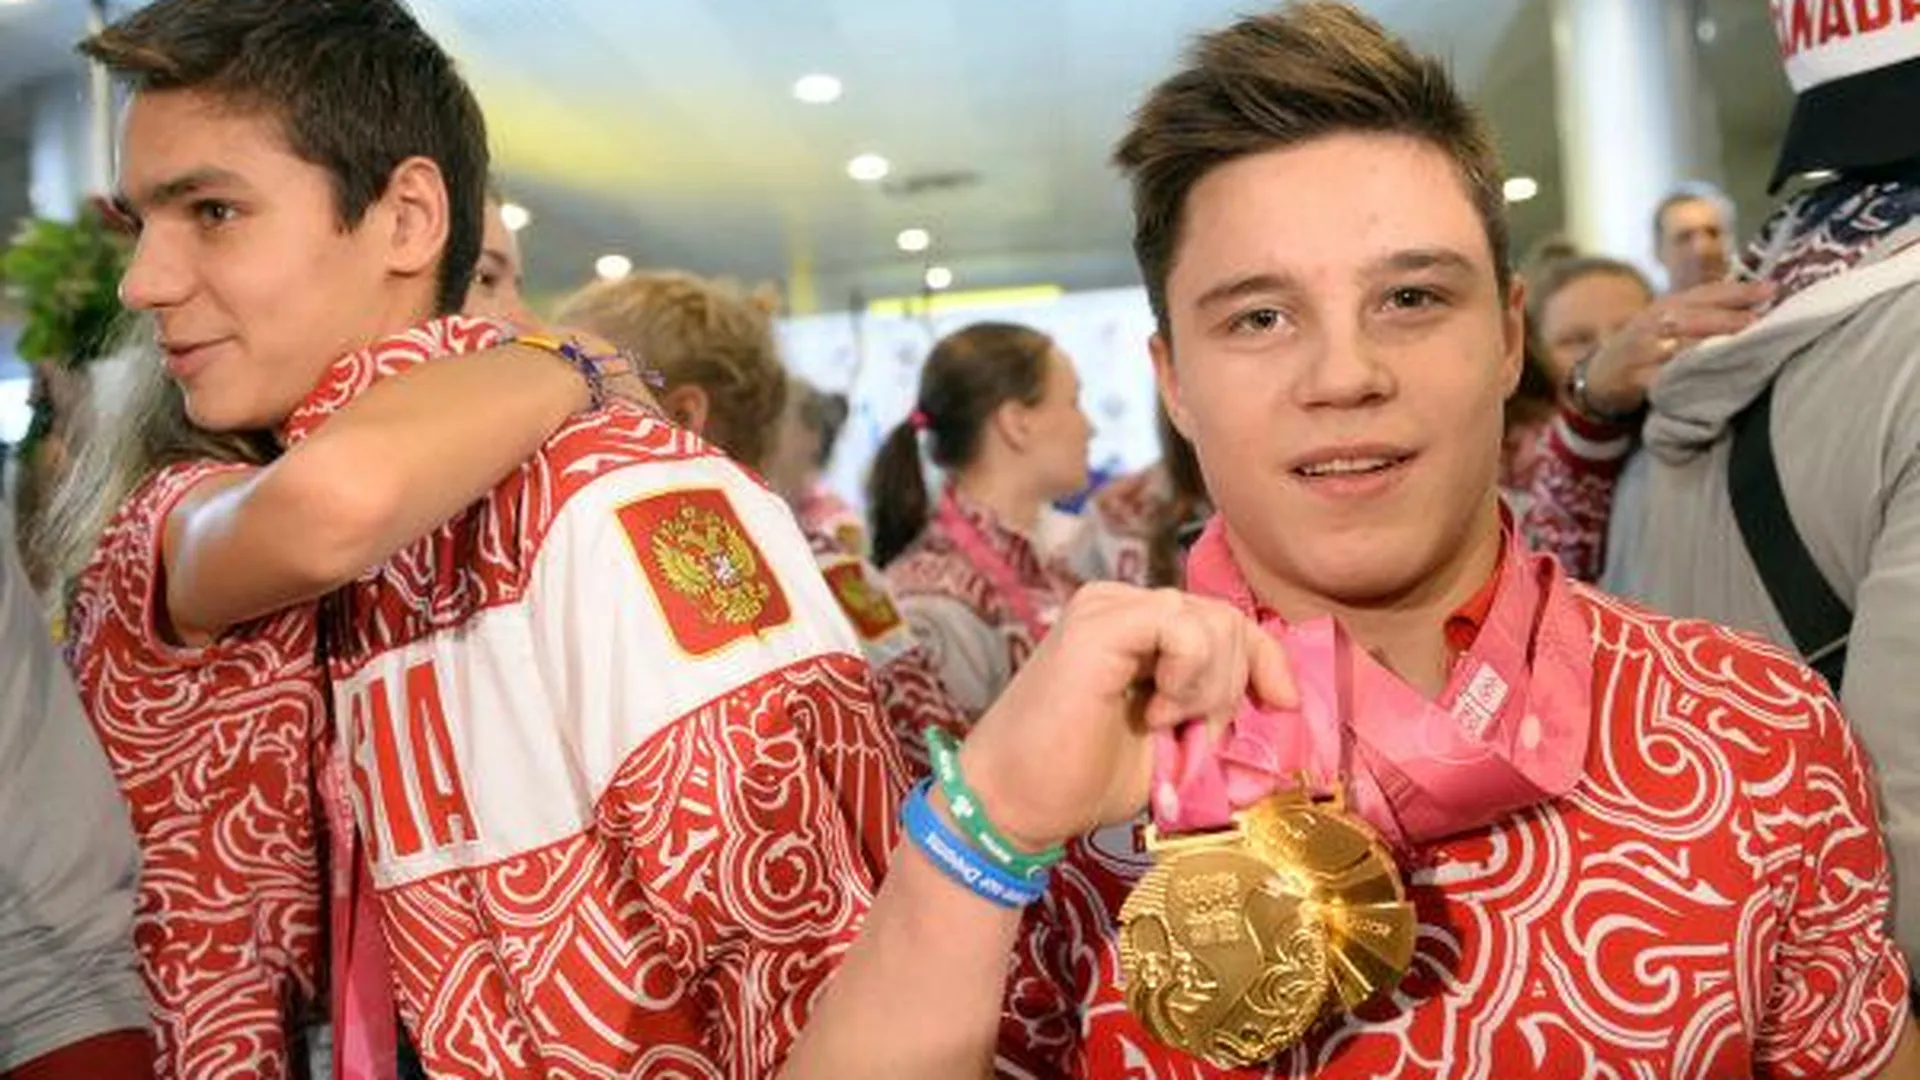 Спортсмены из Подмосковья получили 25 медалей на универсиаде